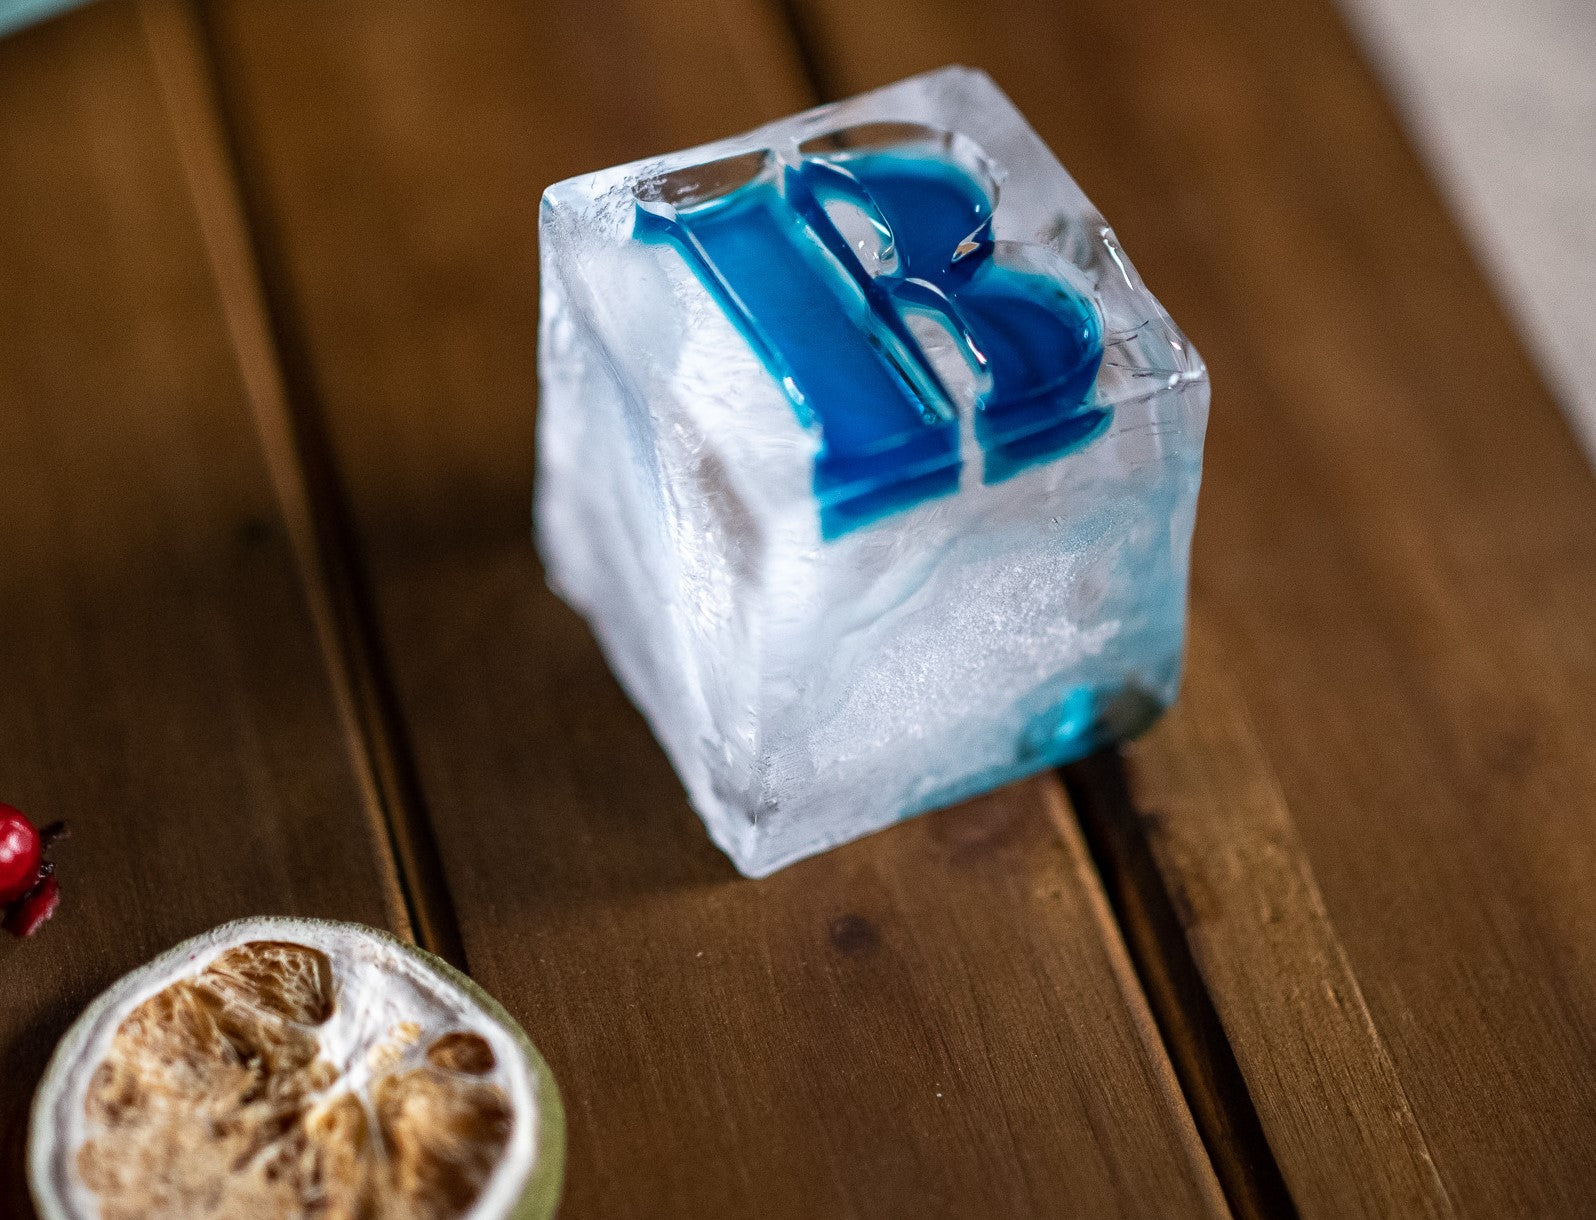 Personalized whiskey ice mold, Monogram ice cube mold, Custom ice tray,  Custom silicone ice cube mold, Letter ice mold, Initial whiskey ice